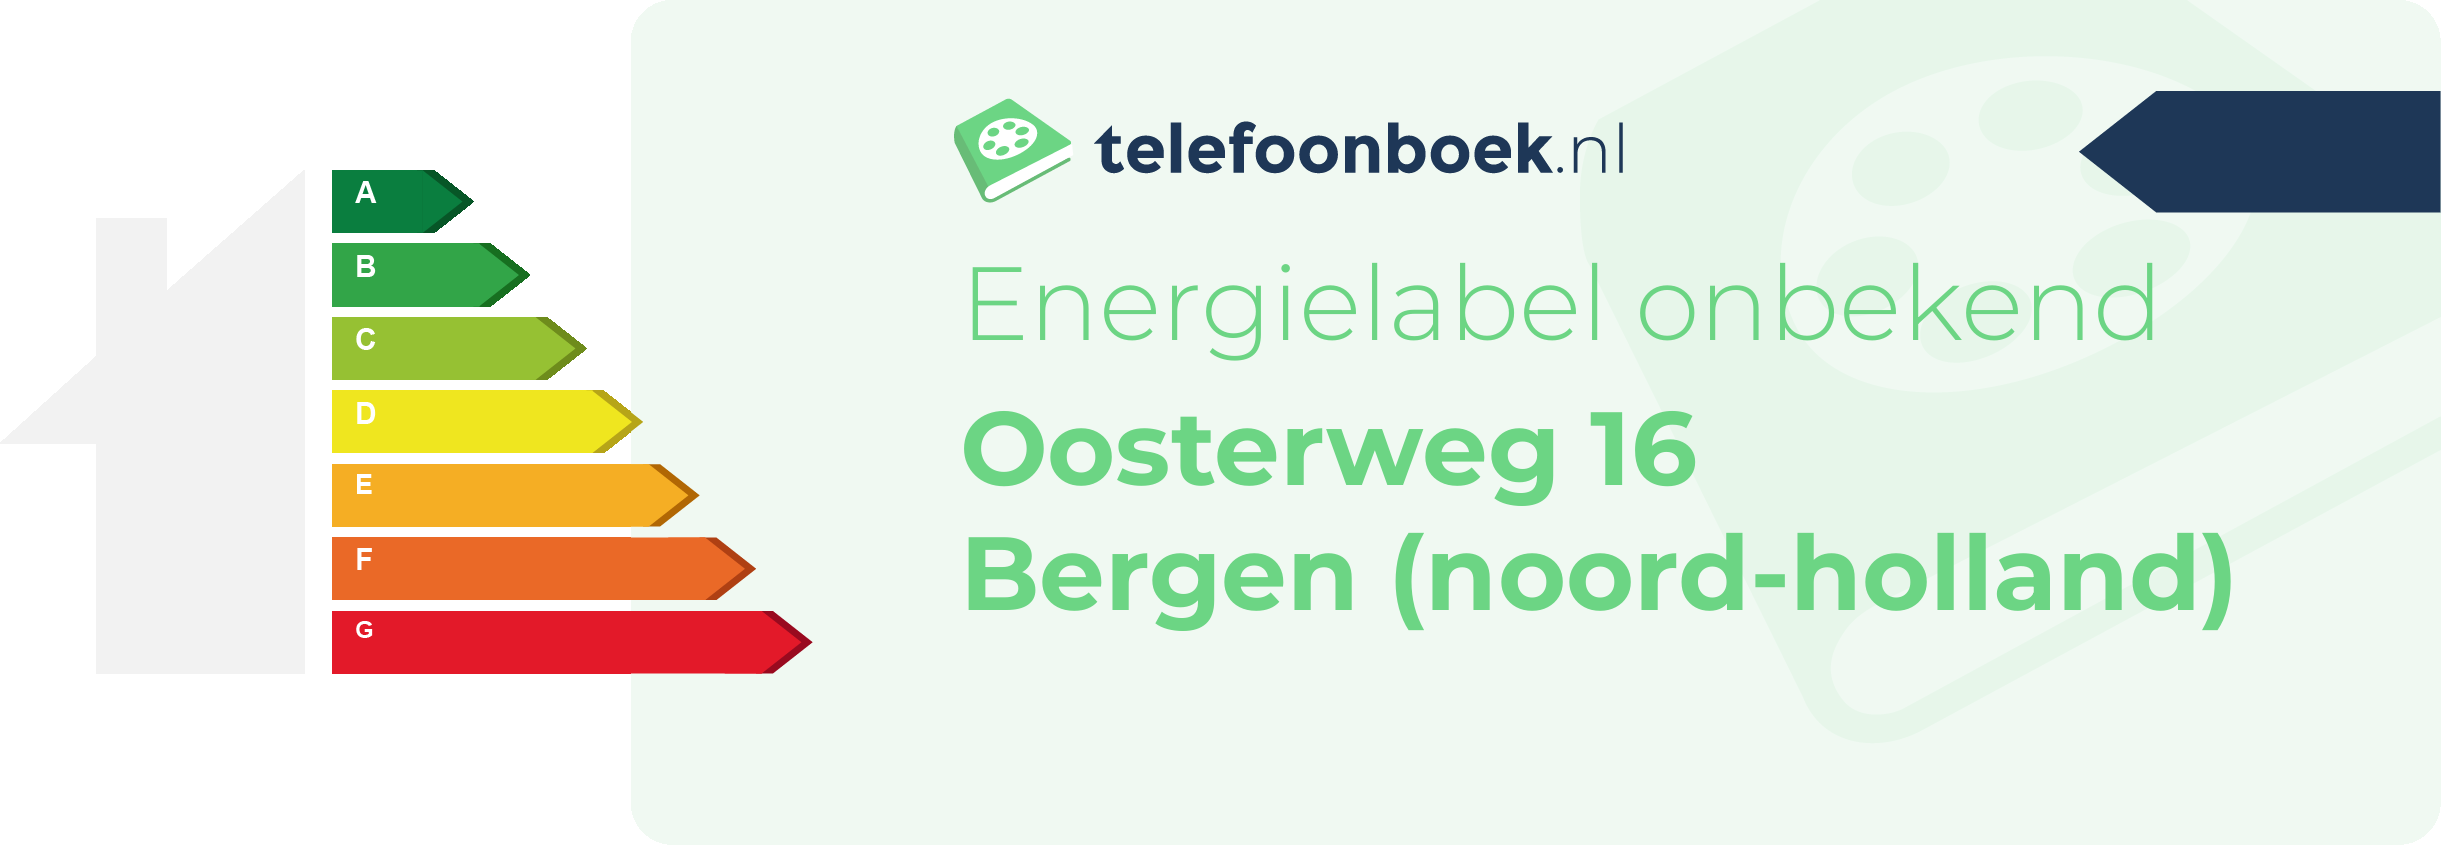 Energielabel Oosterweg 16 Bergen (Noord-Holland)